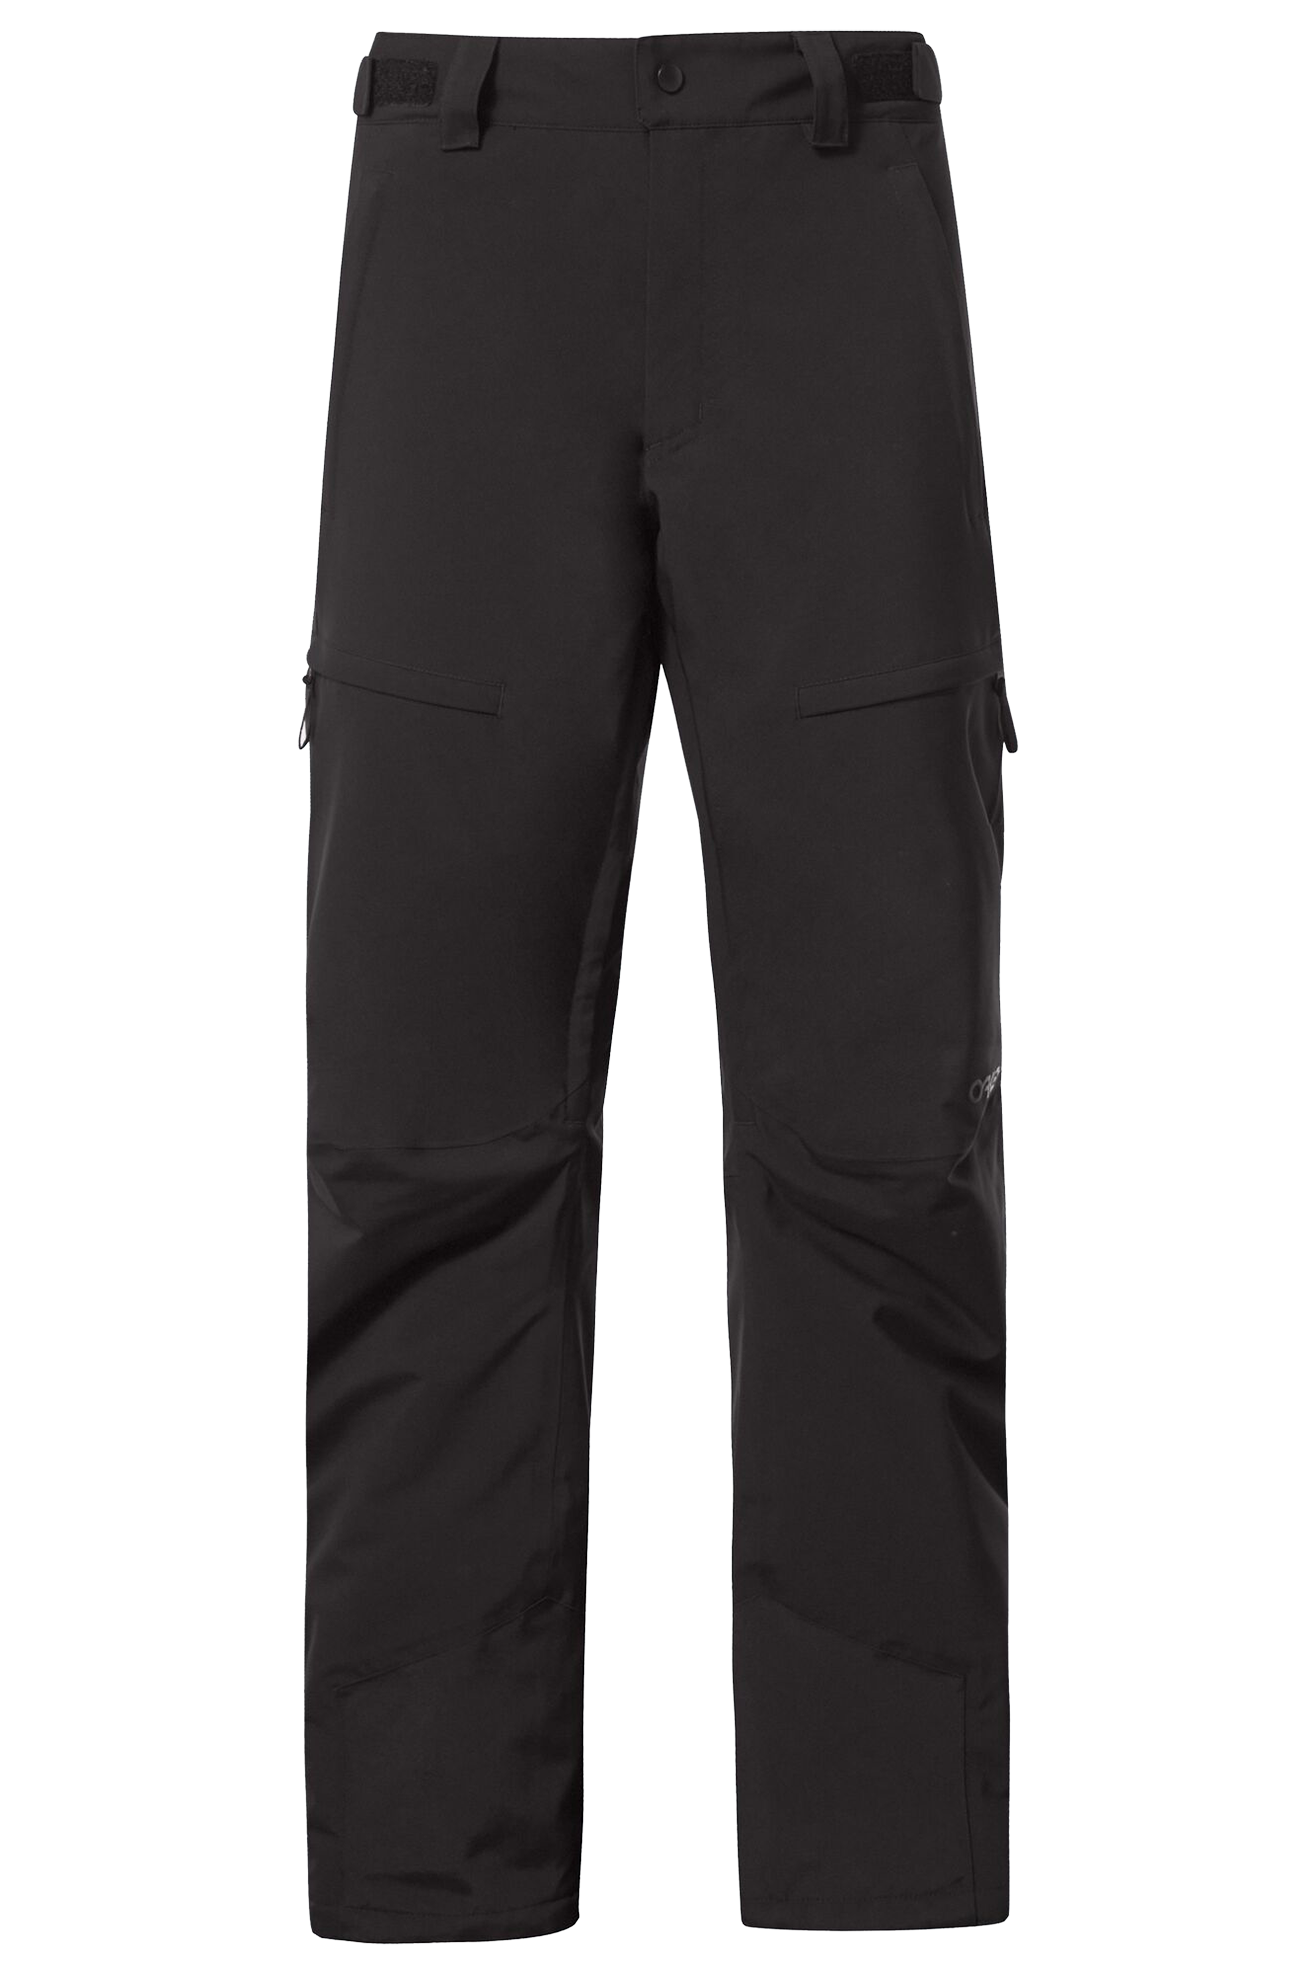 Oakley Pantalones  Axis Insulated Negro Apagado